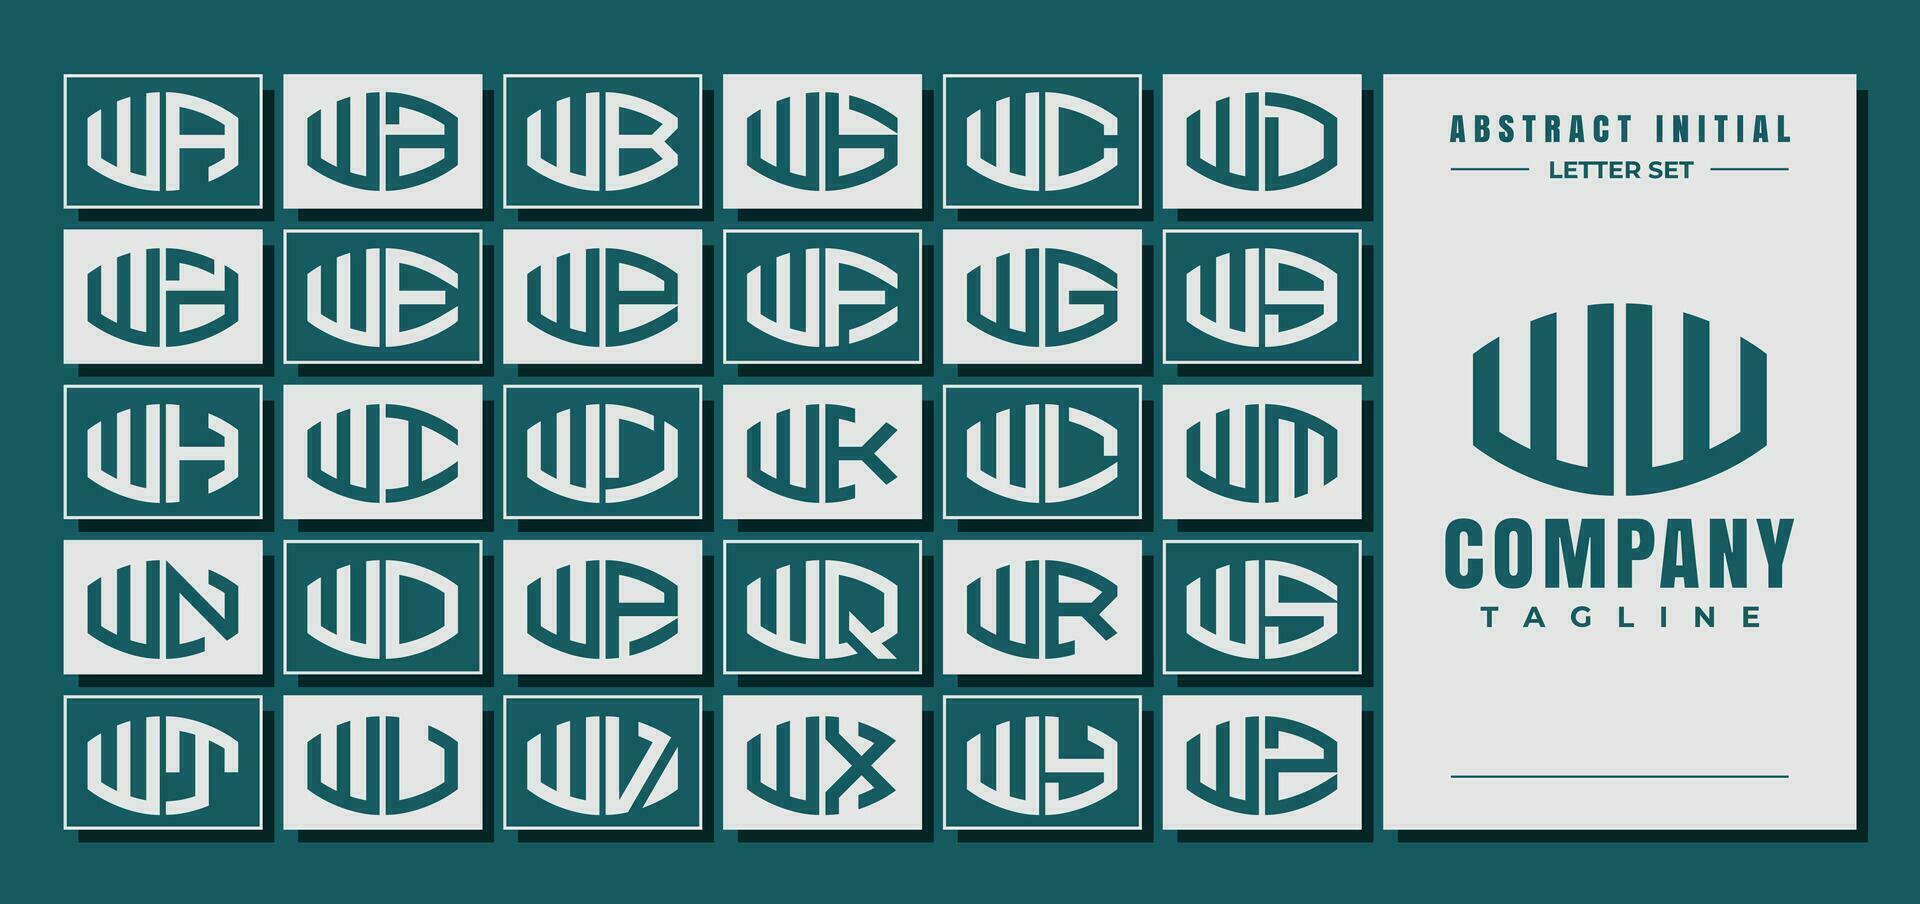 astratto curva forma iniziale w ww lettera logo design fascio vettore